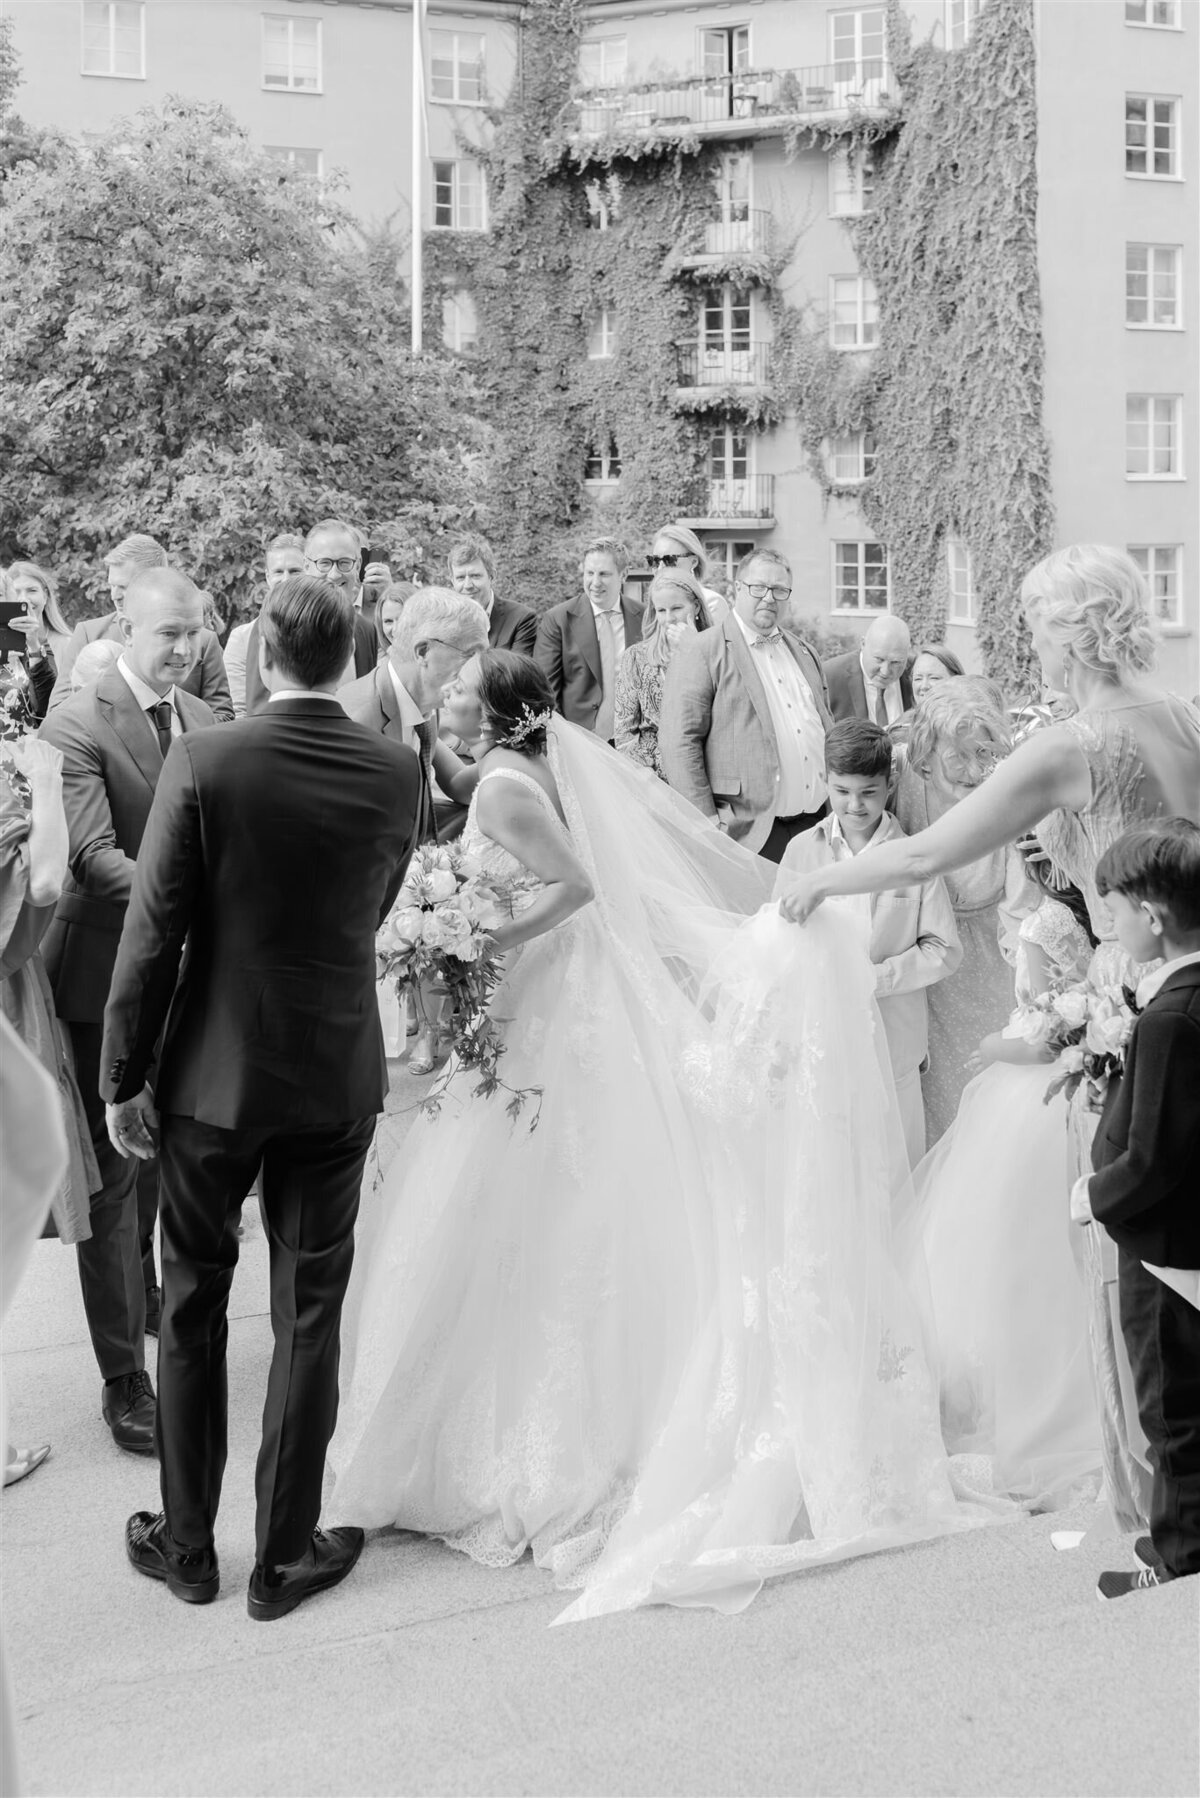 Wedding Photographer Anna Lundgren - helloalora_Wedding at Stallmästaregården in Stockholm Sweden18